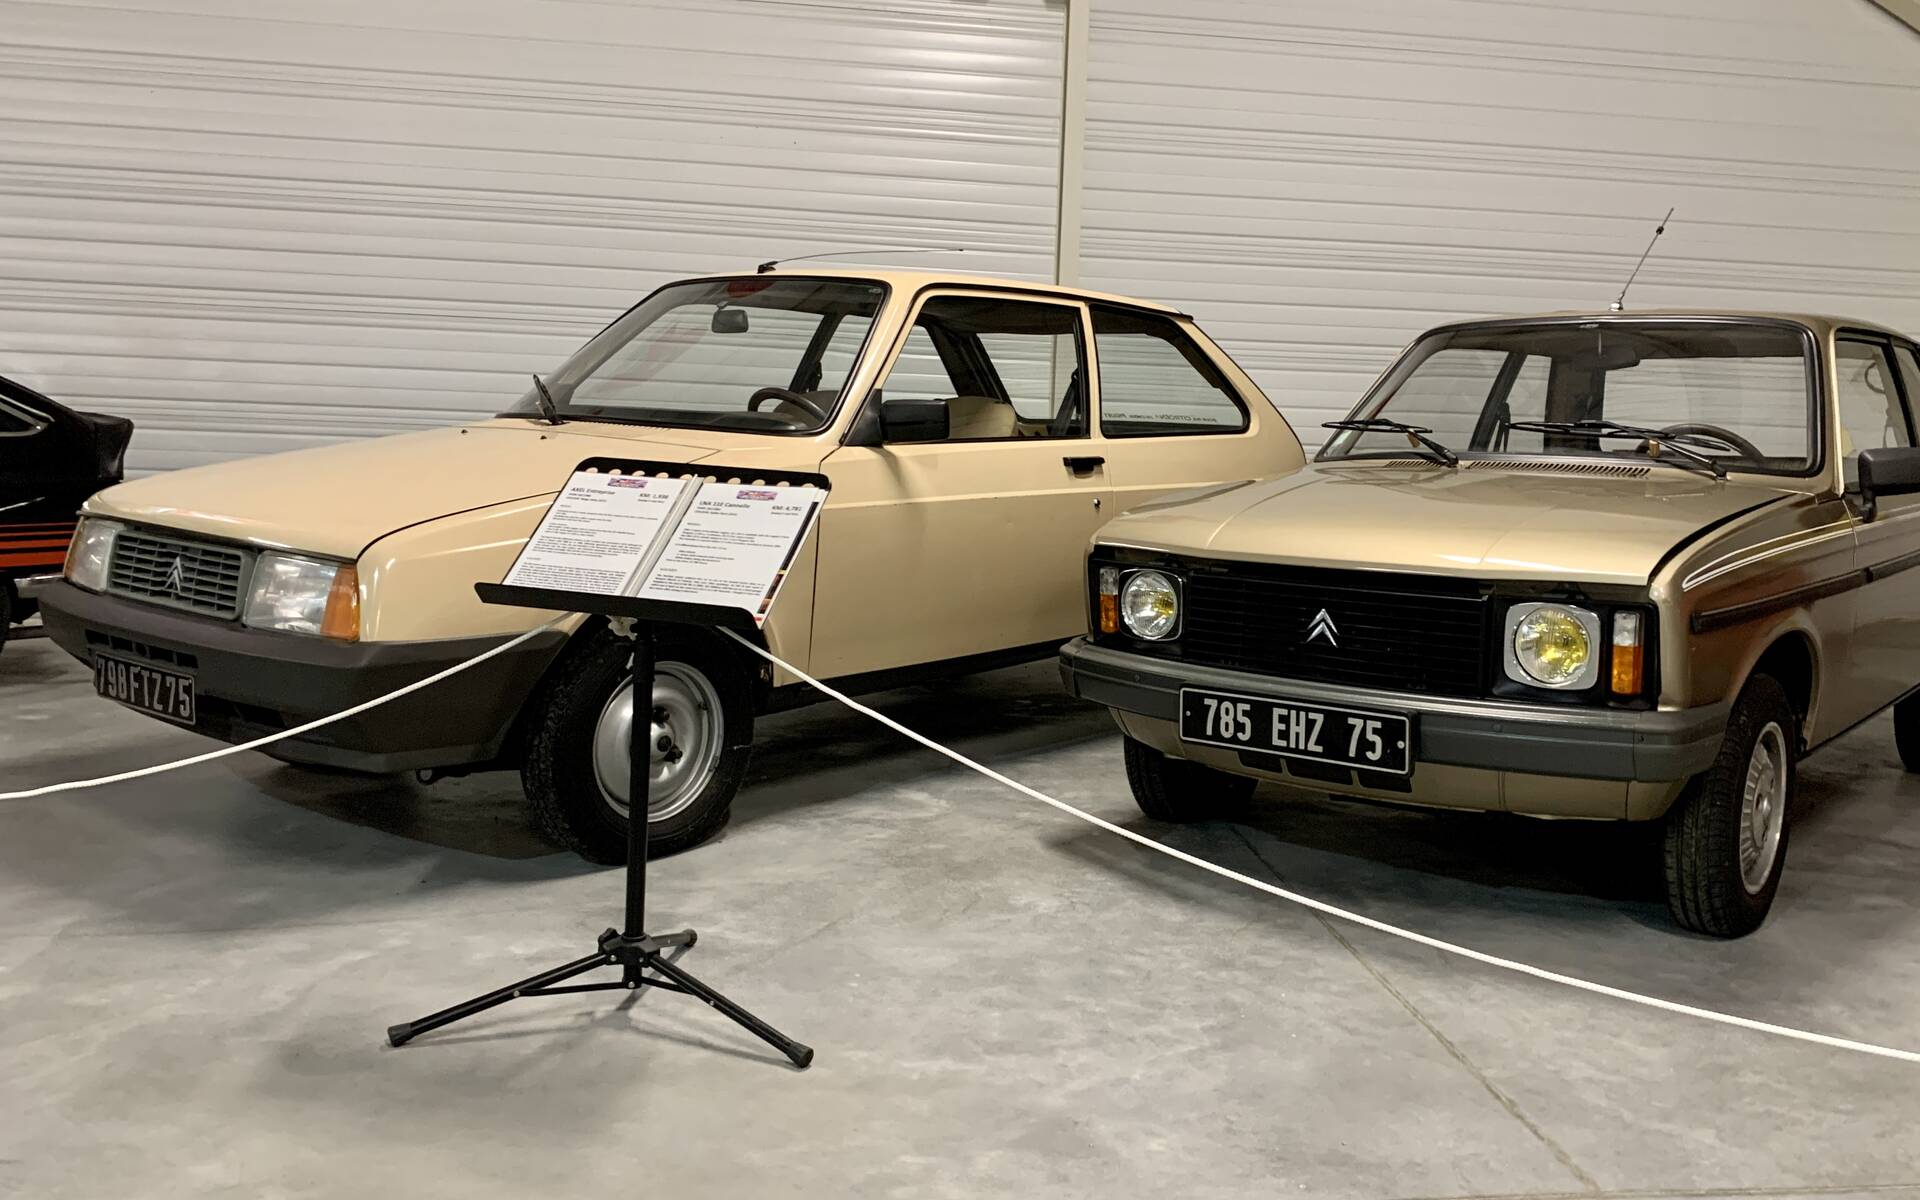 32 - Photos: plus de 100 Citroën d'exception réunies dans un musée en France 543101-photos-plus-de-100-citroen-d-exception-reunies-dans-un-musee-en-france